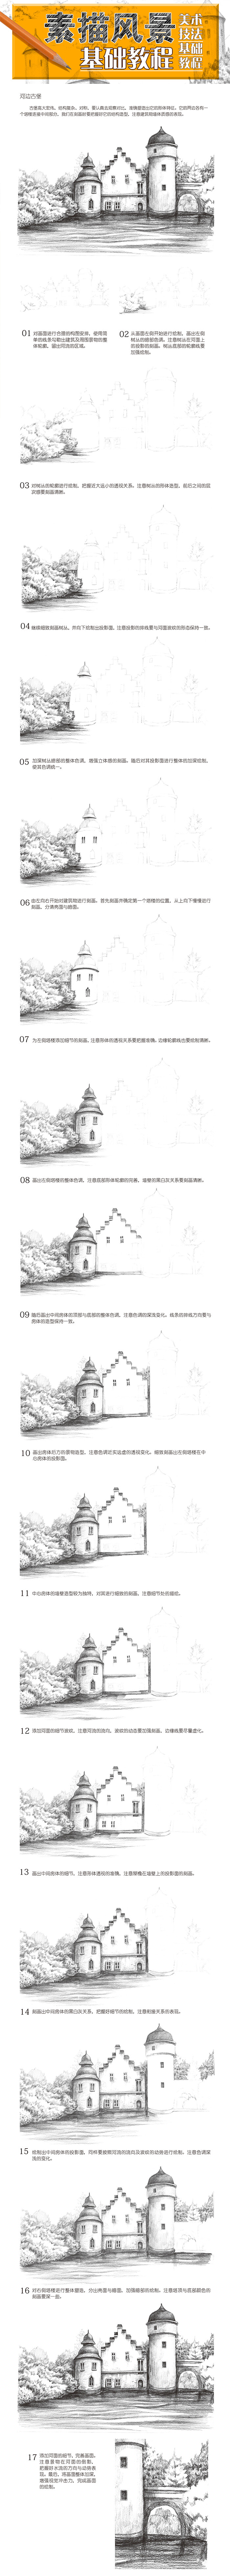 本案例摘自《素描风景基础教程》，人民邮电出版社出版。http://product.dangdang.com/23623795.html